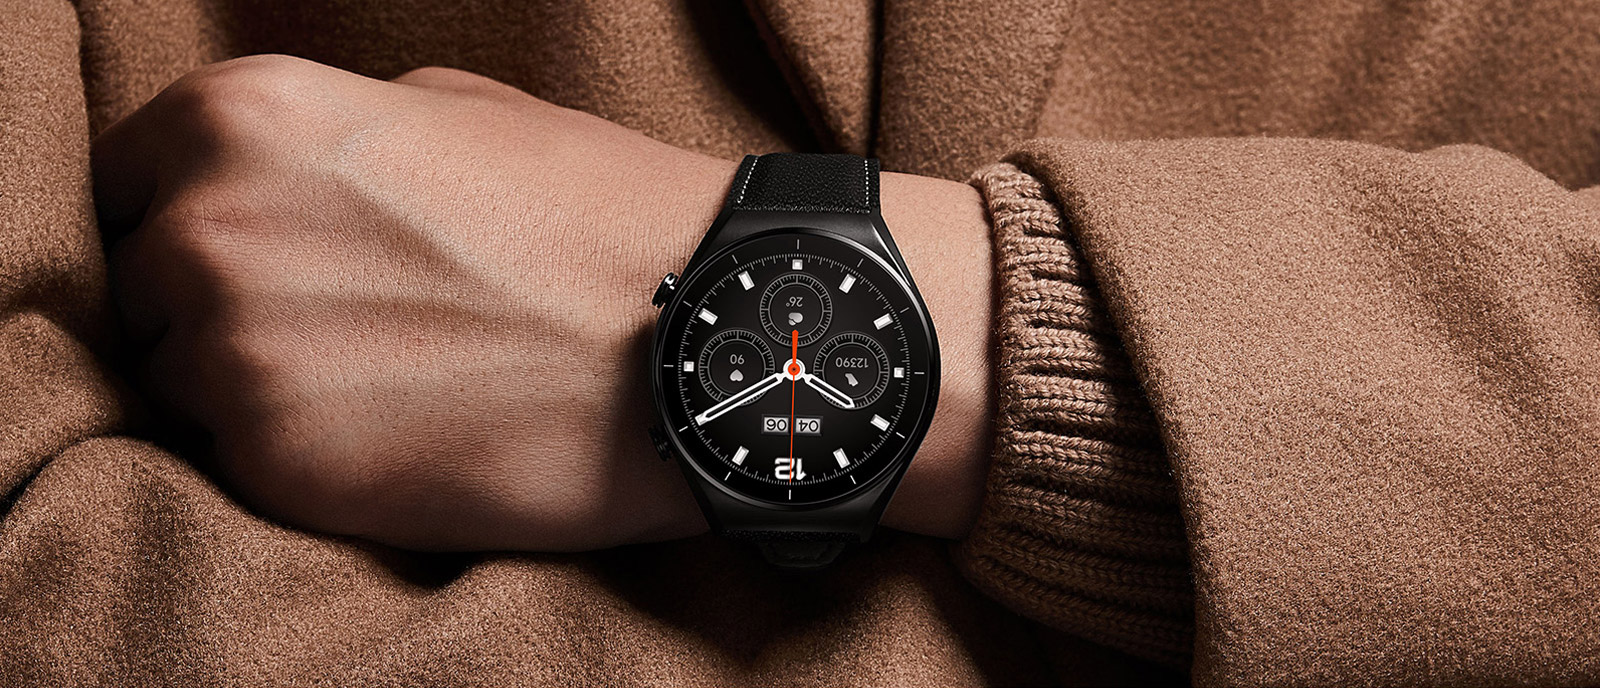 ساعت هوشمند شیائومی Xiaomi Watch S1 فروشگاه اینترنتی گوگل کالا